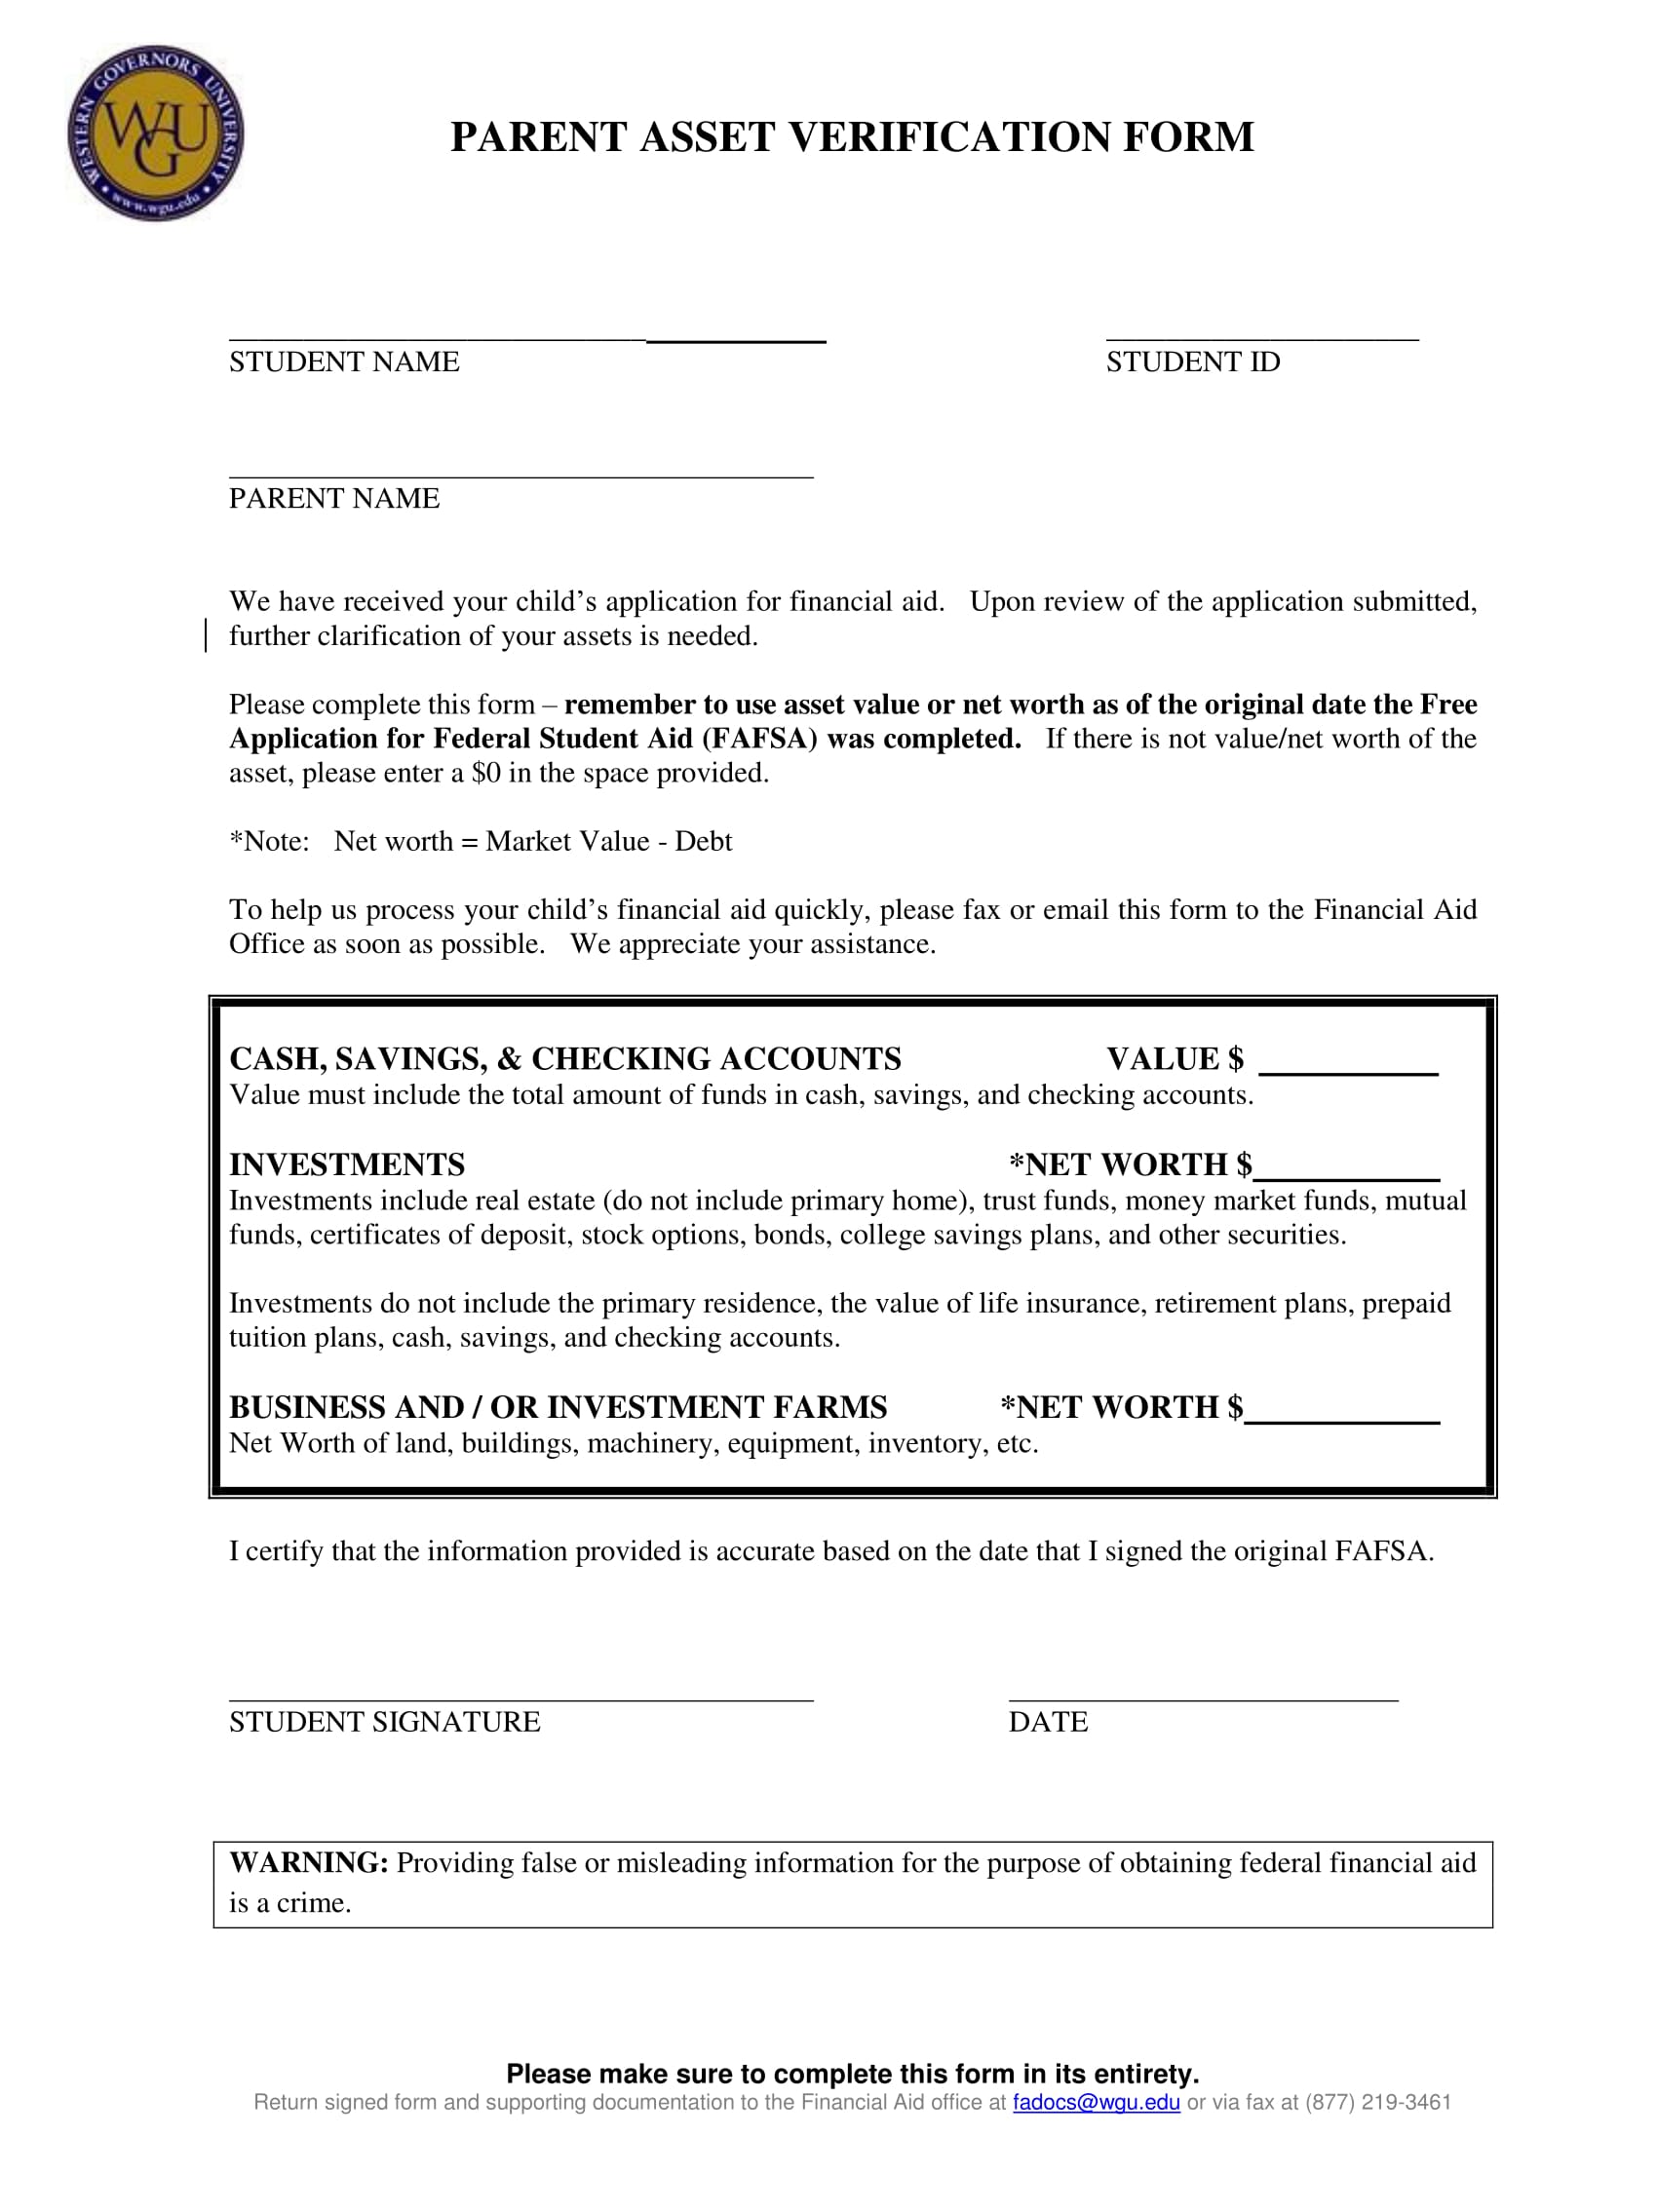 parent asset verification form 1